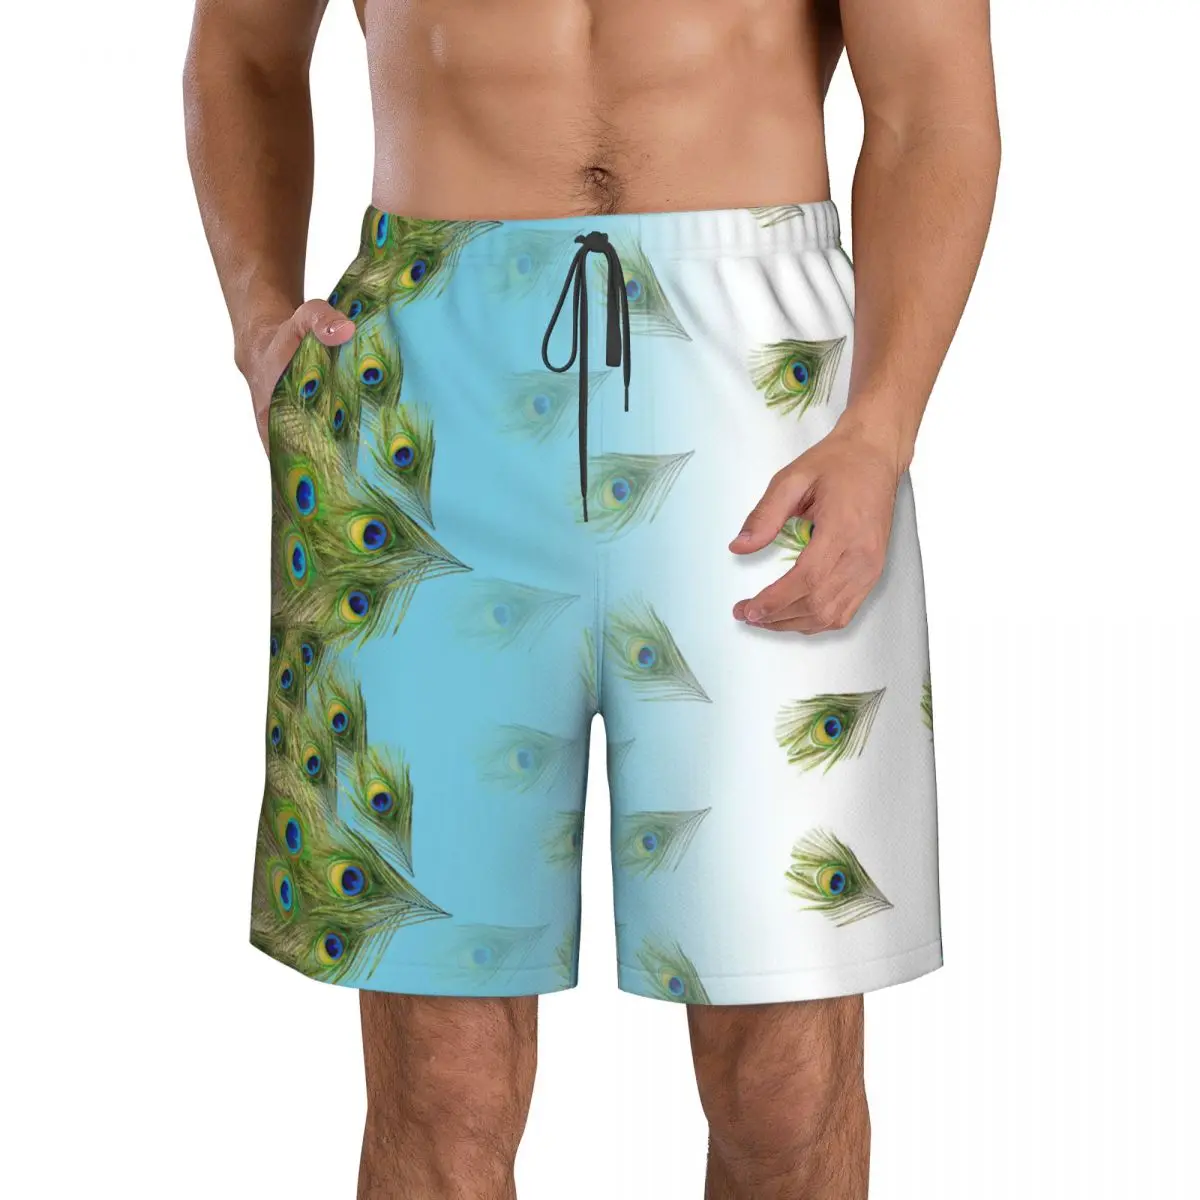 

Быстросохнущие плавательные шорты для мужчин, купальники, мужской купальник, плавки, летняя пляжная одежда для купания, перо павлина